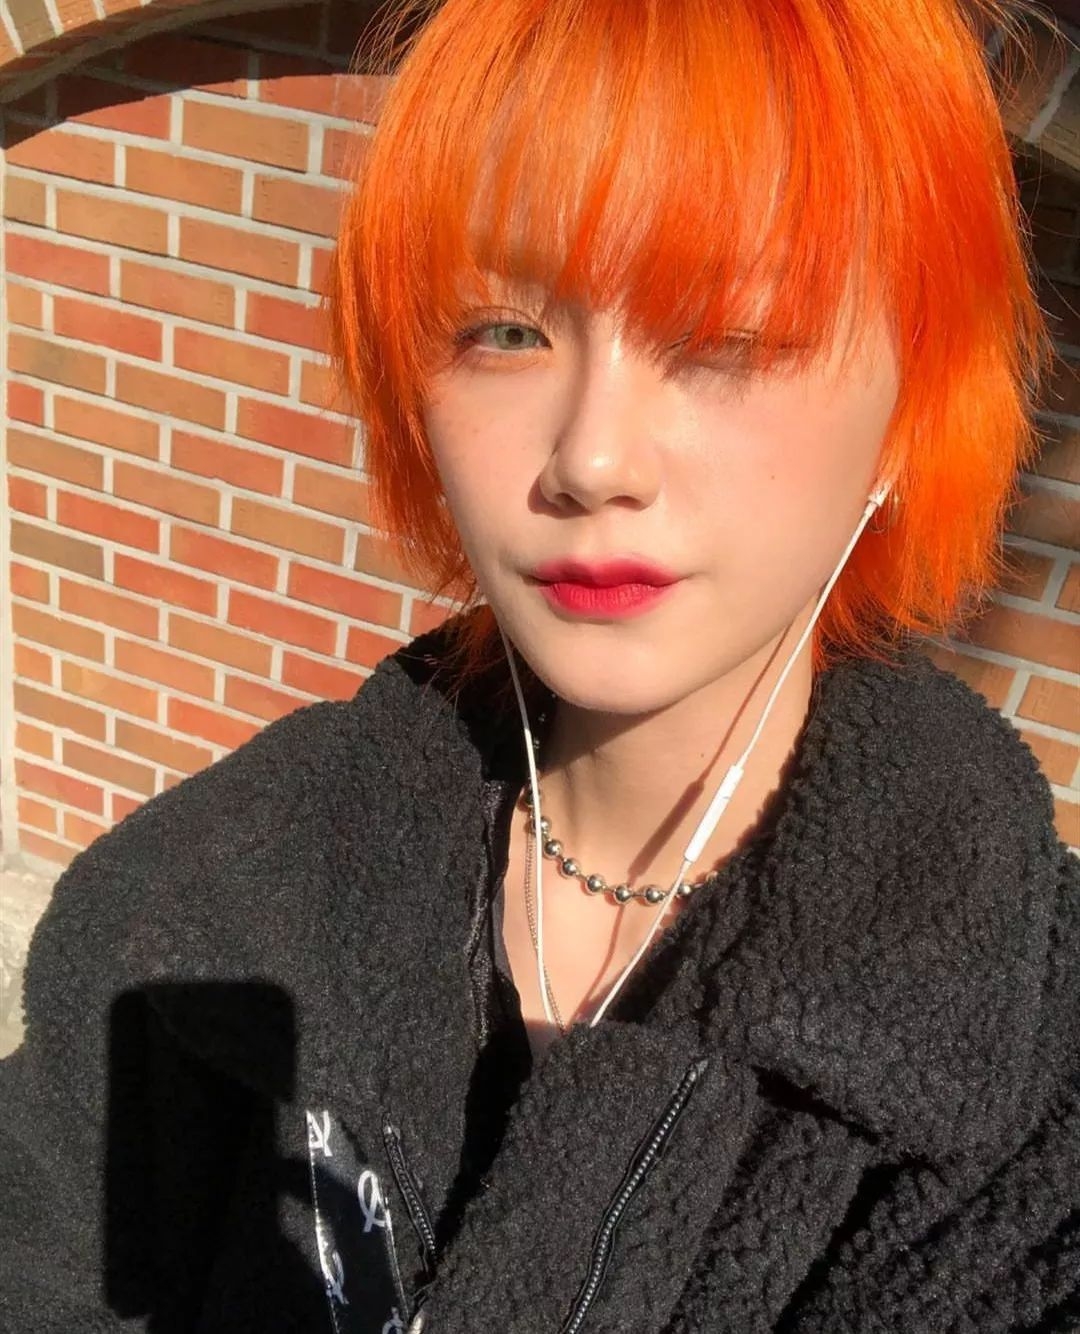 染橘色（橙色）头发是怎样的体验？ - 知乎